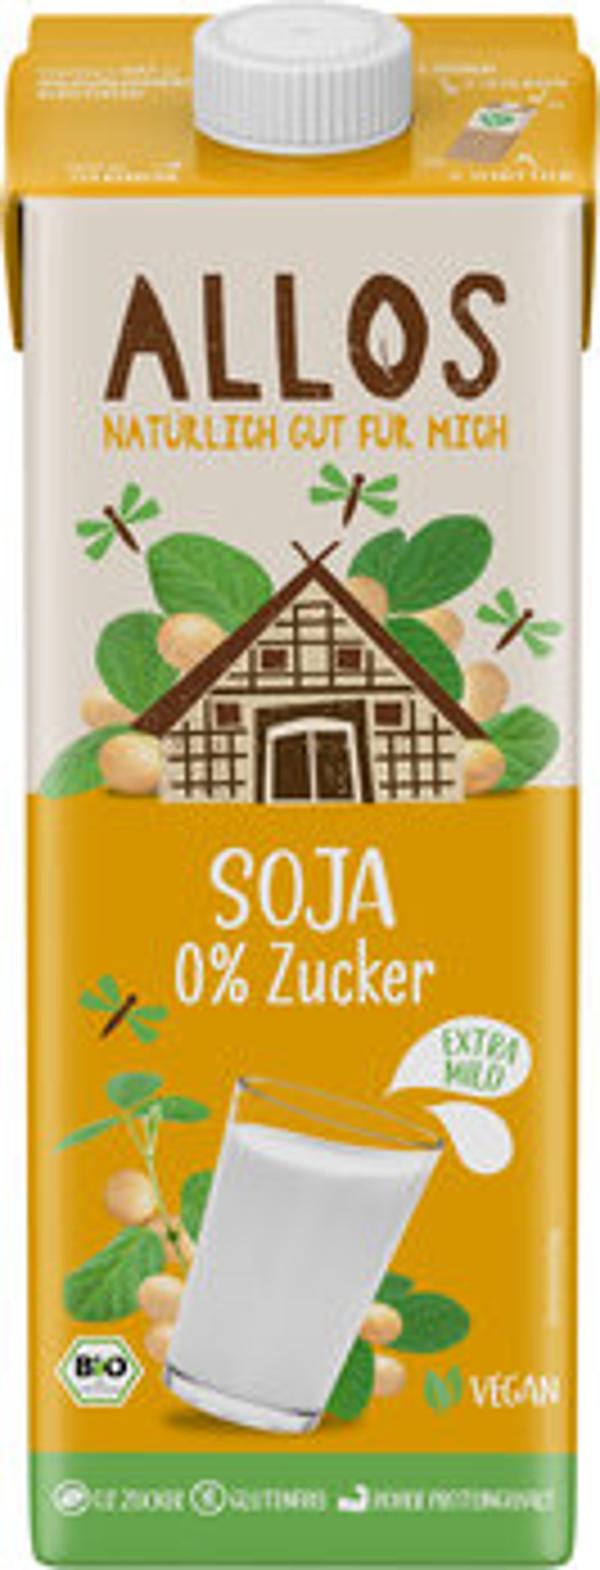 Produktfoto zu Allos Soja Drink 0% Zucker 1l